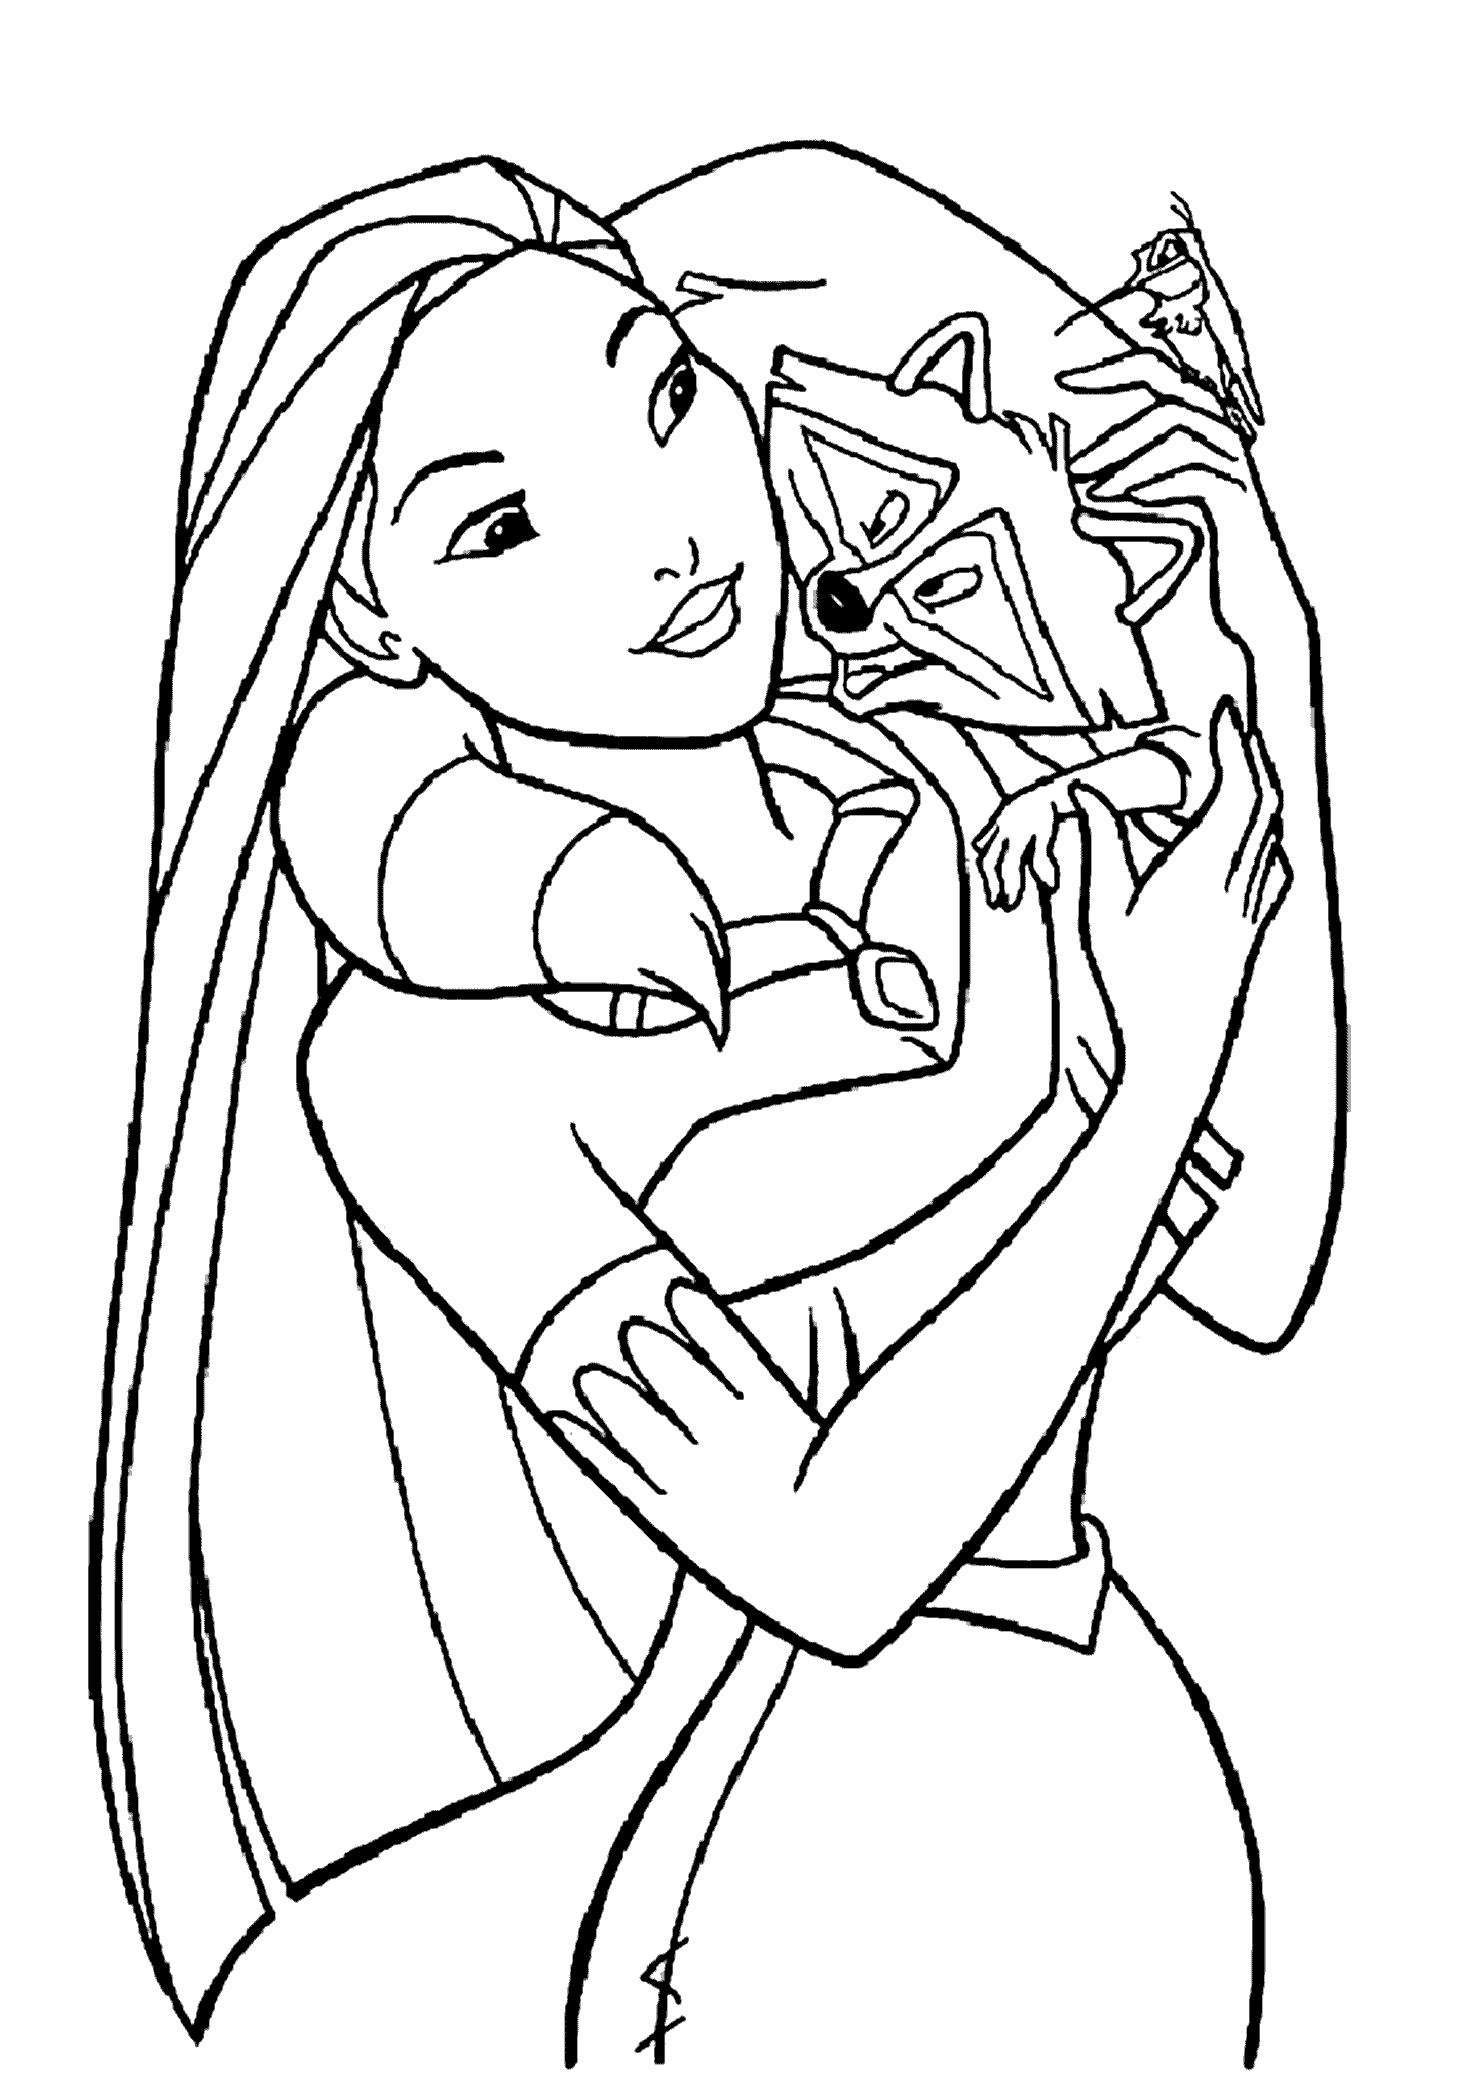 Princesa Pocahontas e Meeko de Pocahontas